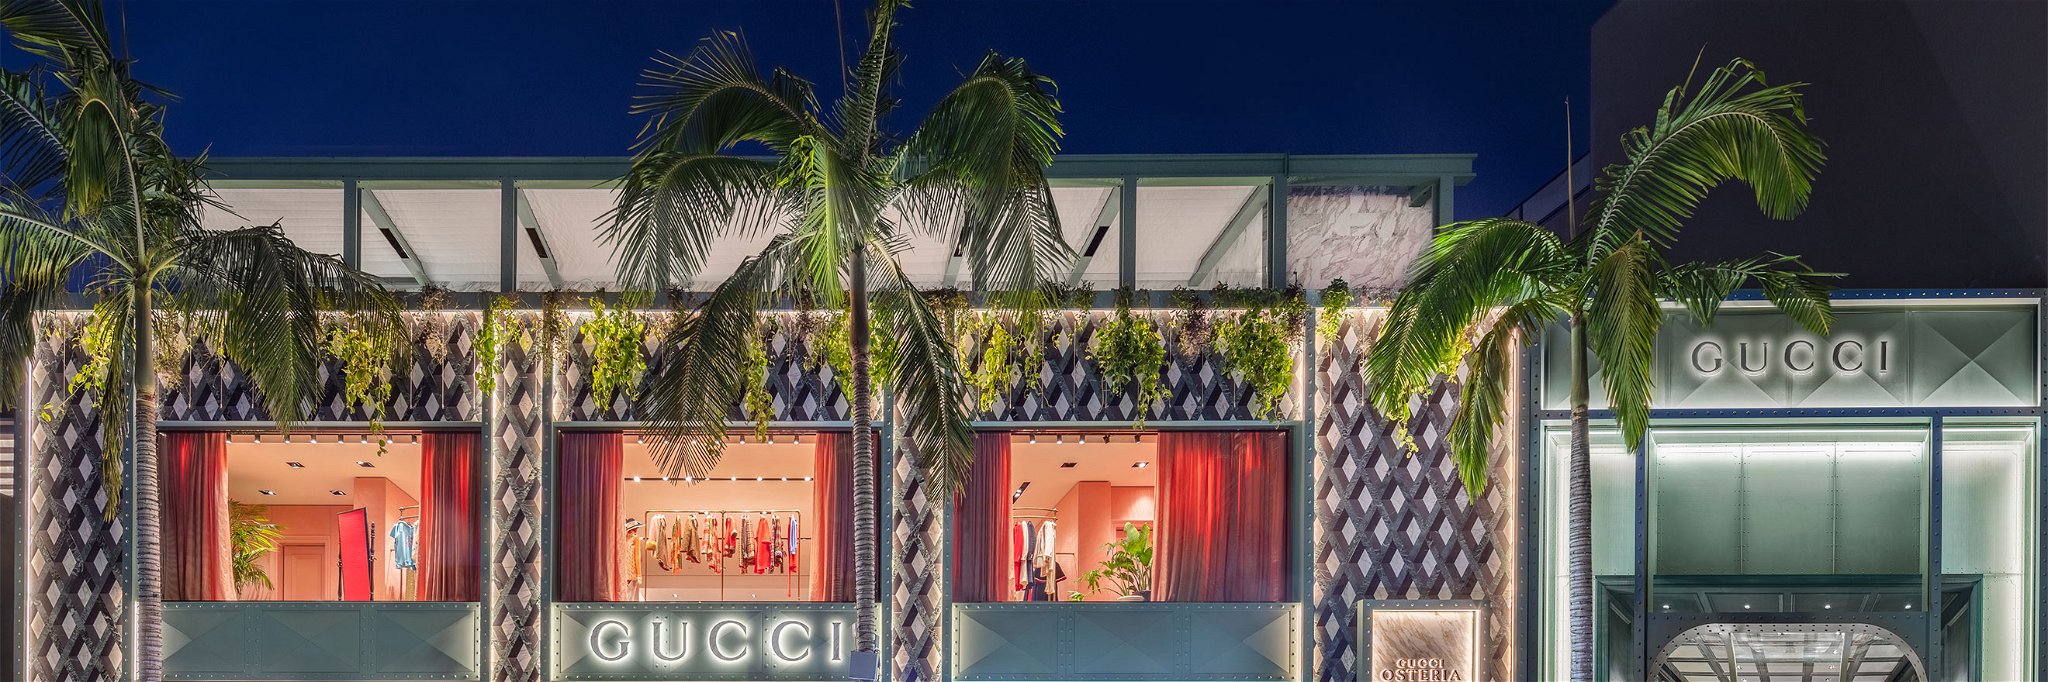 Die neue «Gucci Osteria» von Spitzenkoch Massimo Bottura am Rodeo Drive in Beverly Hills.